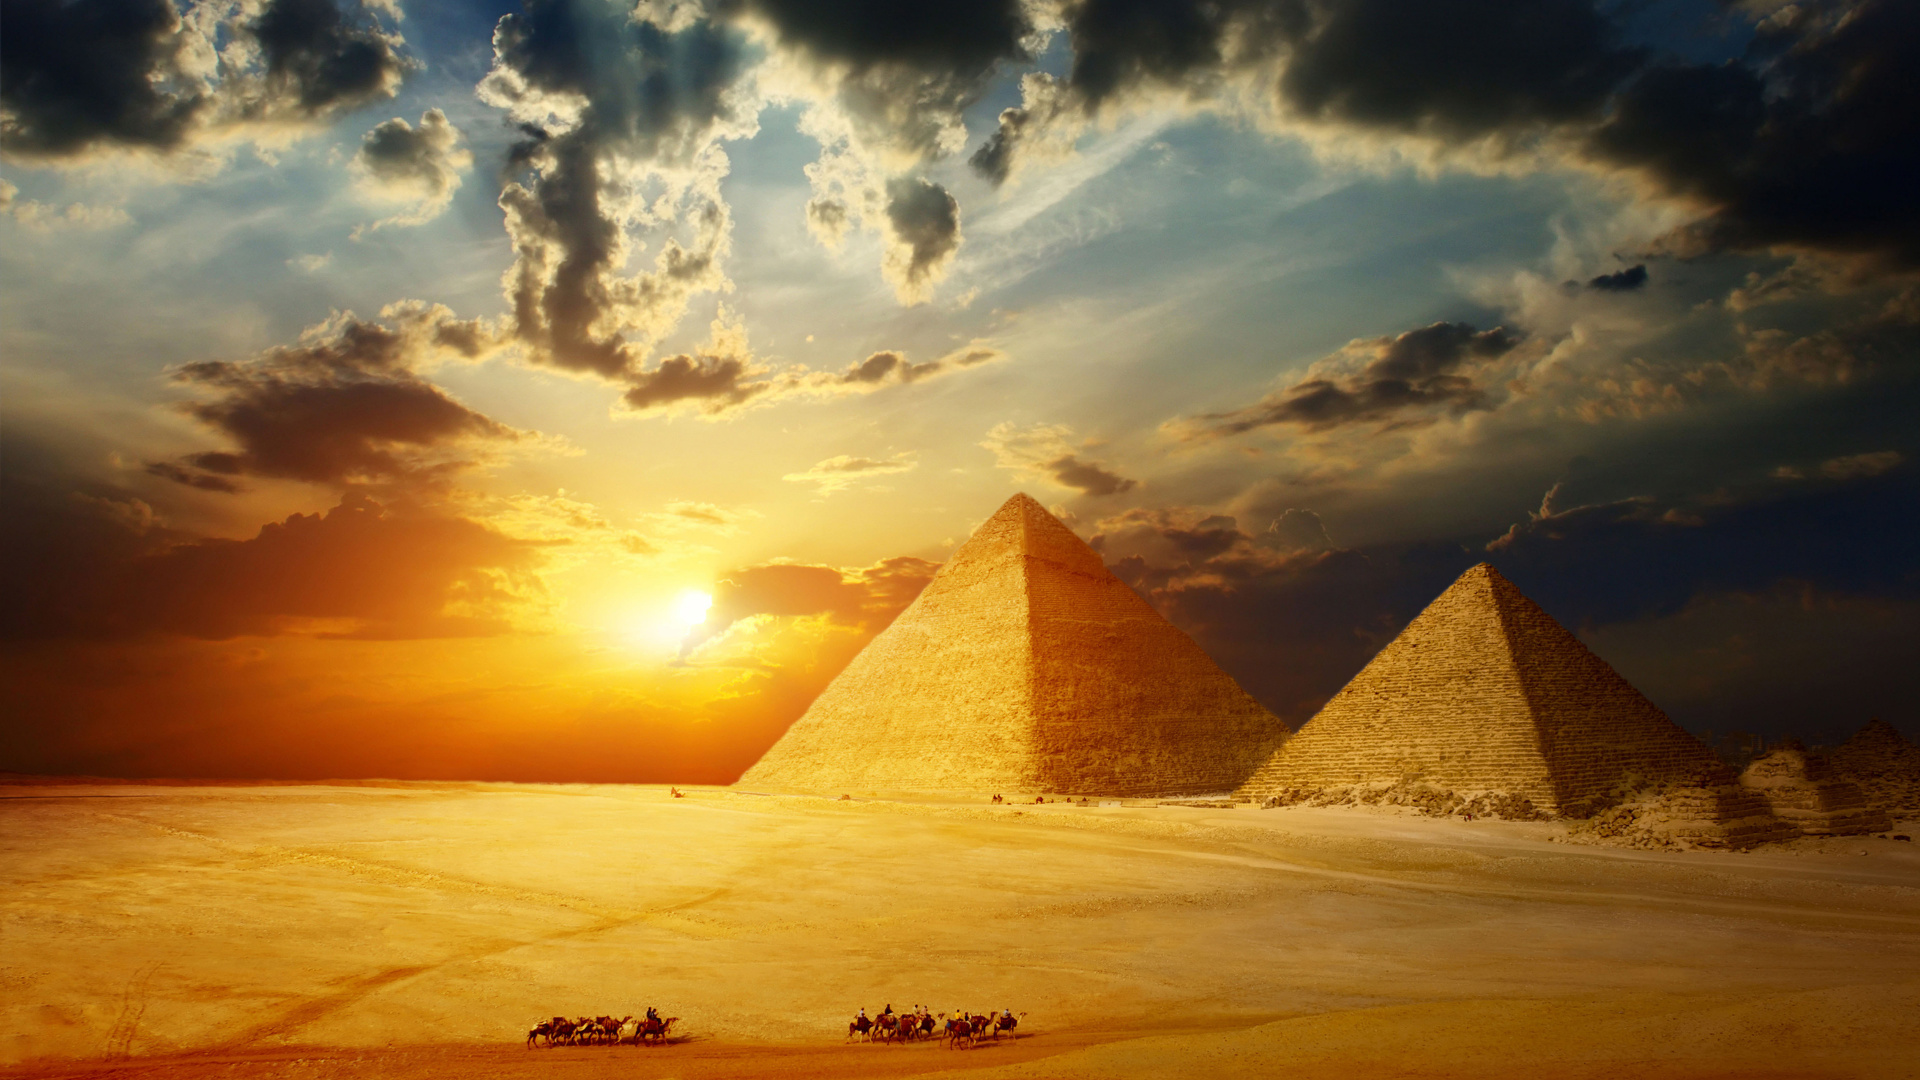 Braune Pyramide Auf Weißem Sand Bei Sonnenuntergang. Wallpaper in 1920x1080 Resolution